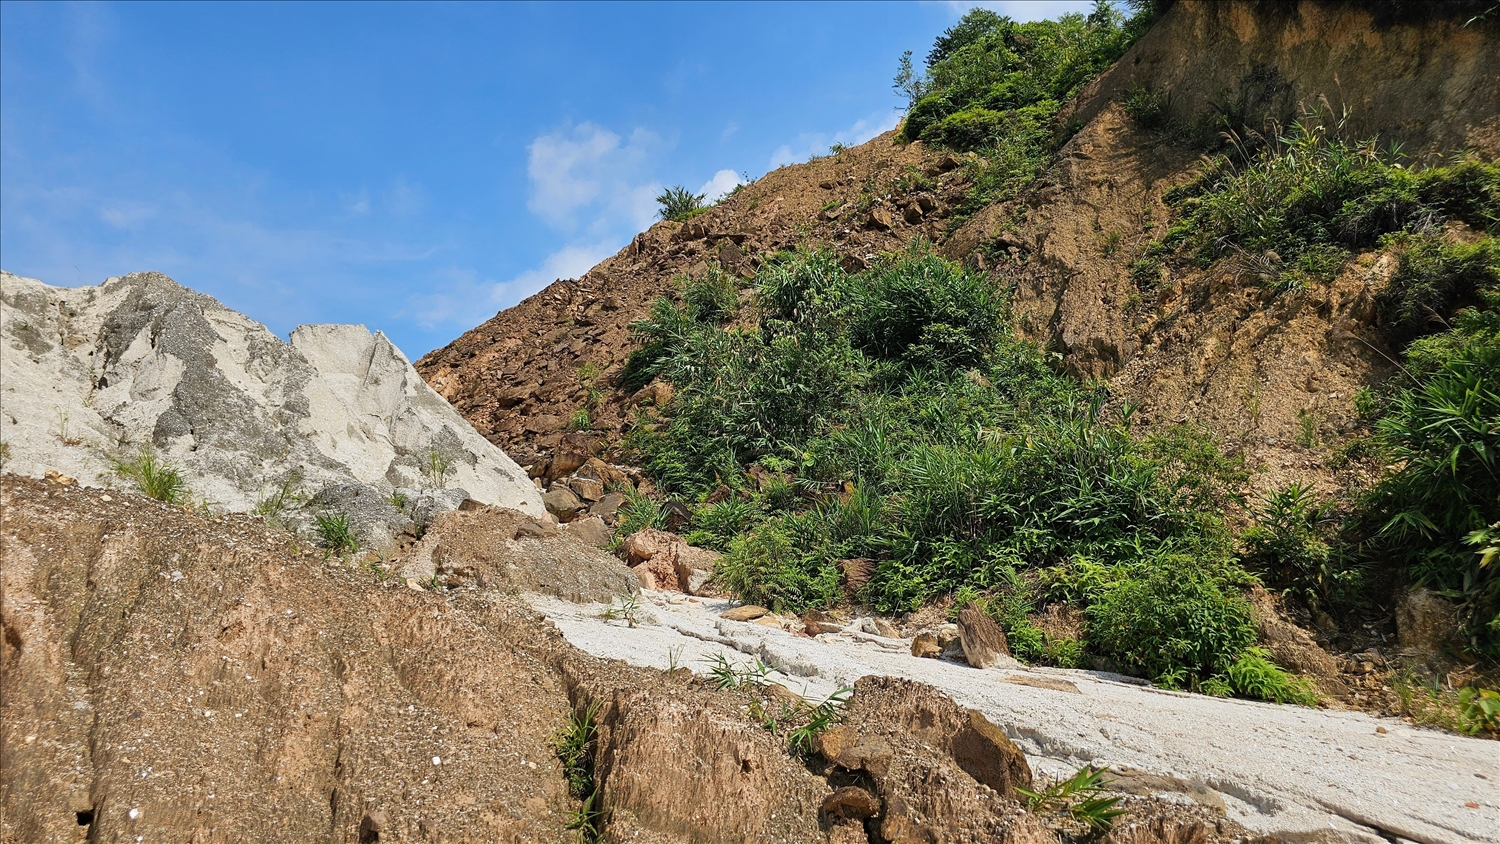 Nhiều khu vực có hiện tượng sụt trượt, đồi núi nứt nẻ hết sức nguy hiểm